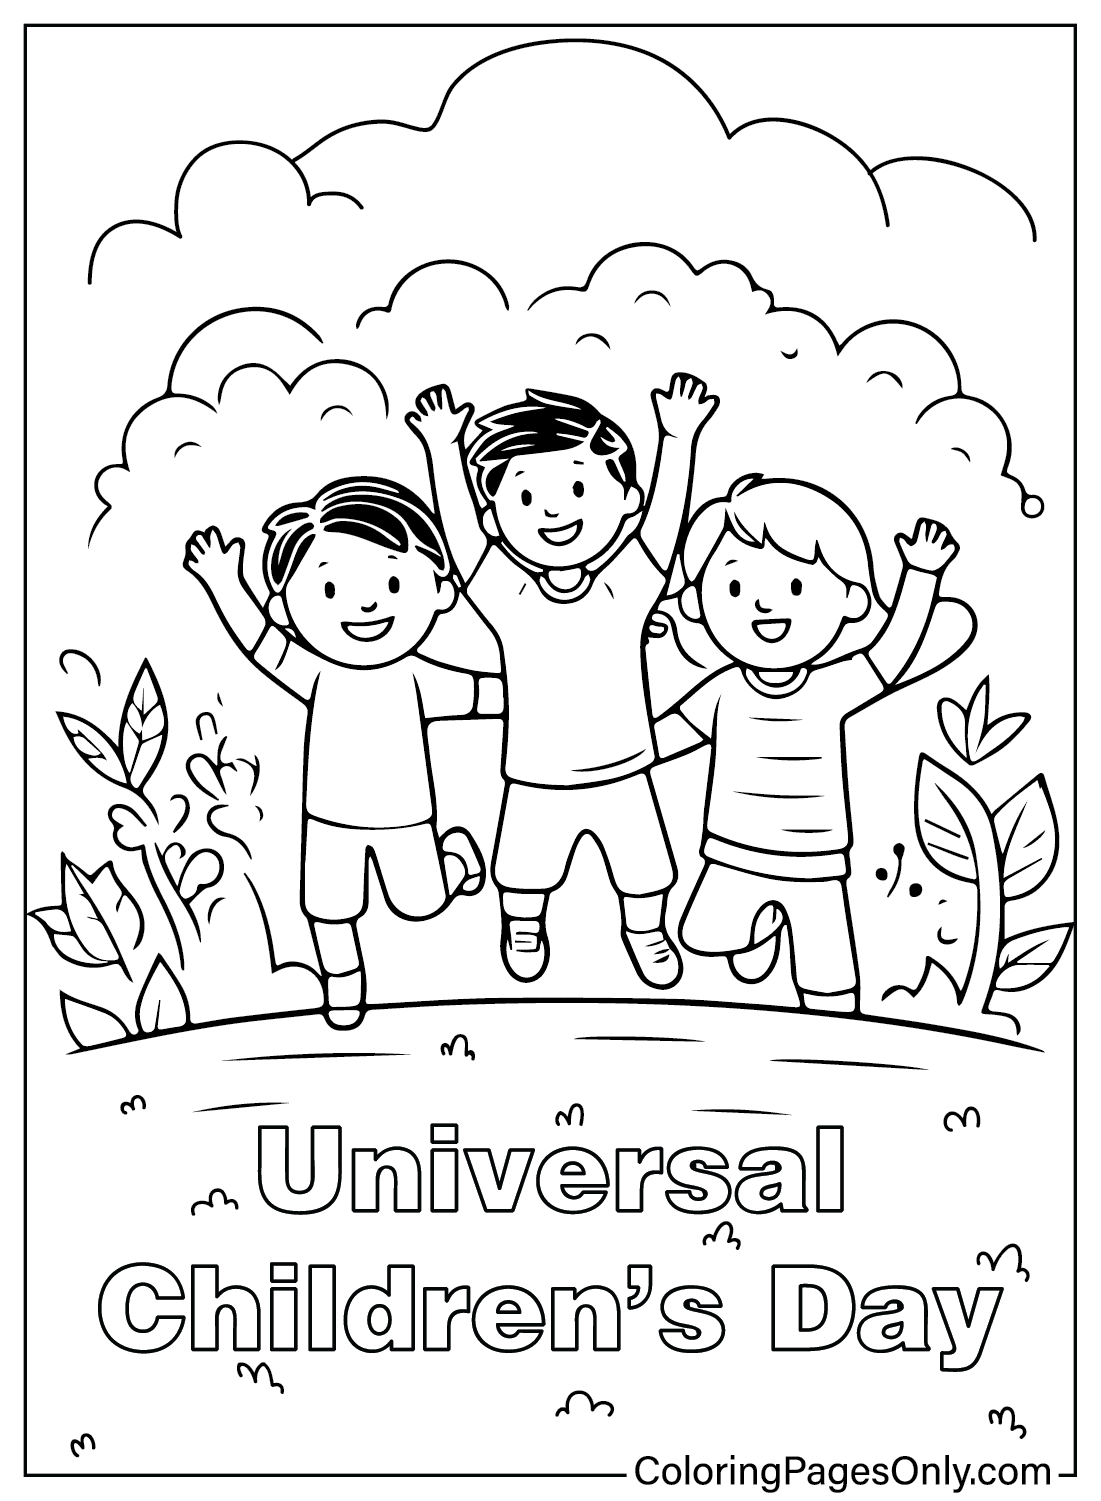 Malvorlage zum universellen Kindertag vom Kindertag